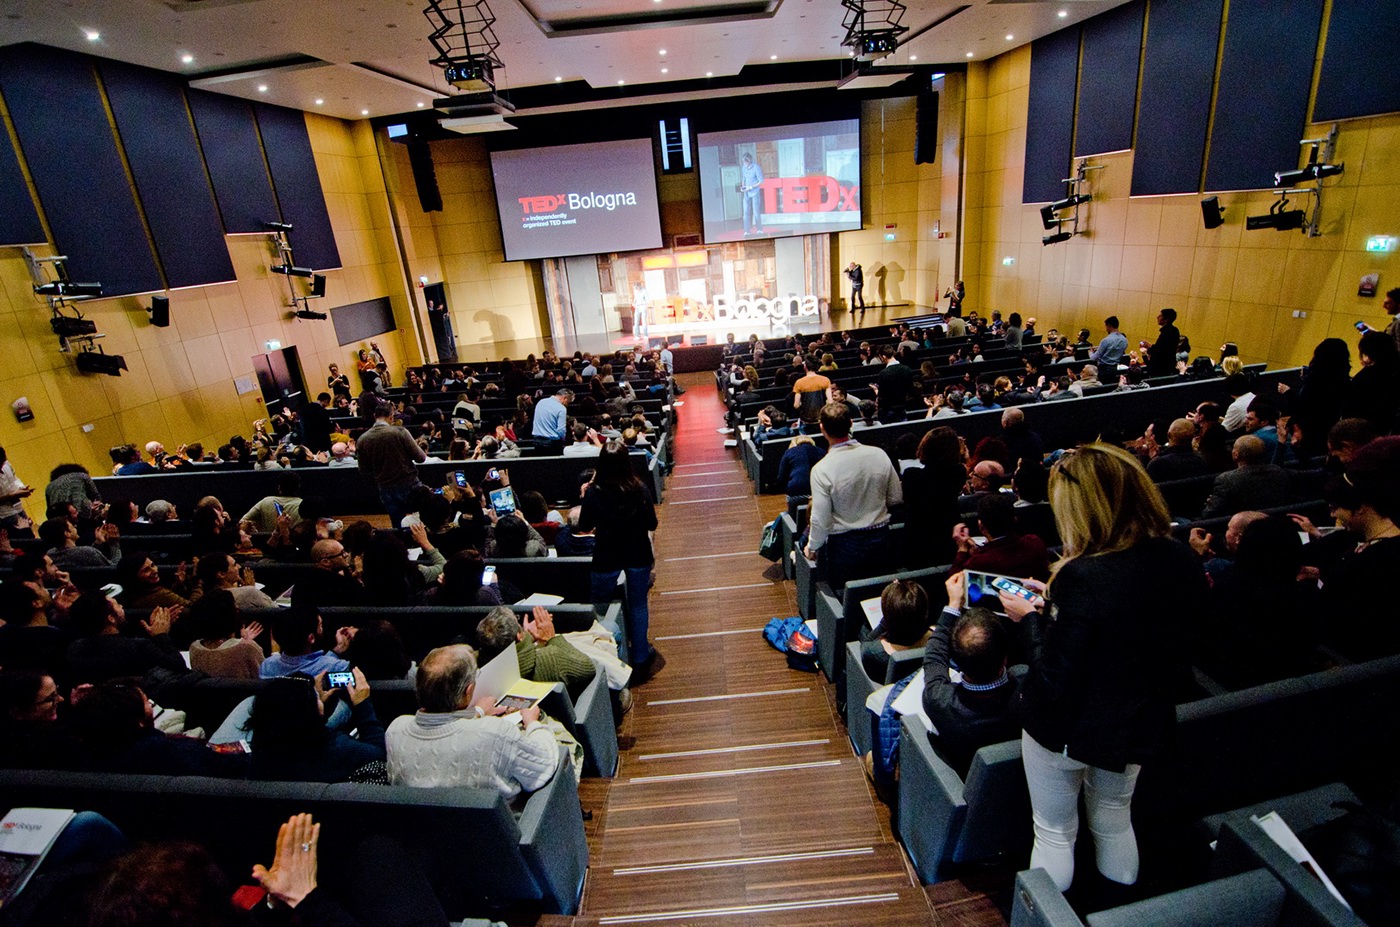 TEDx TedXBologna bologna